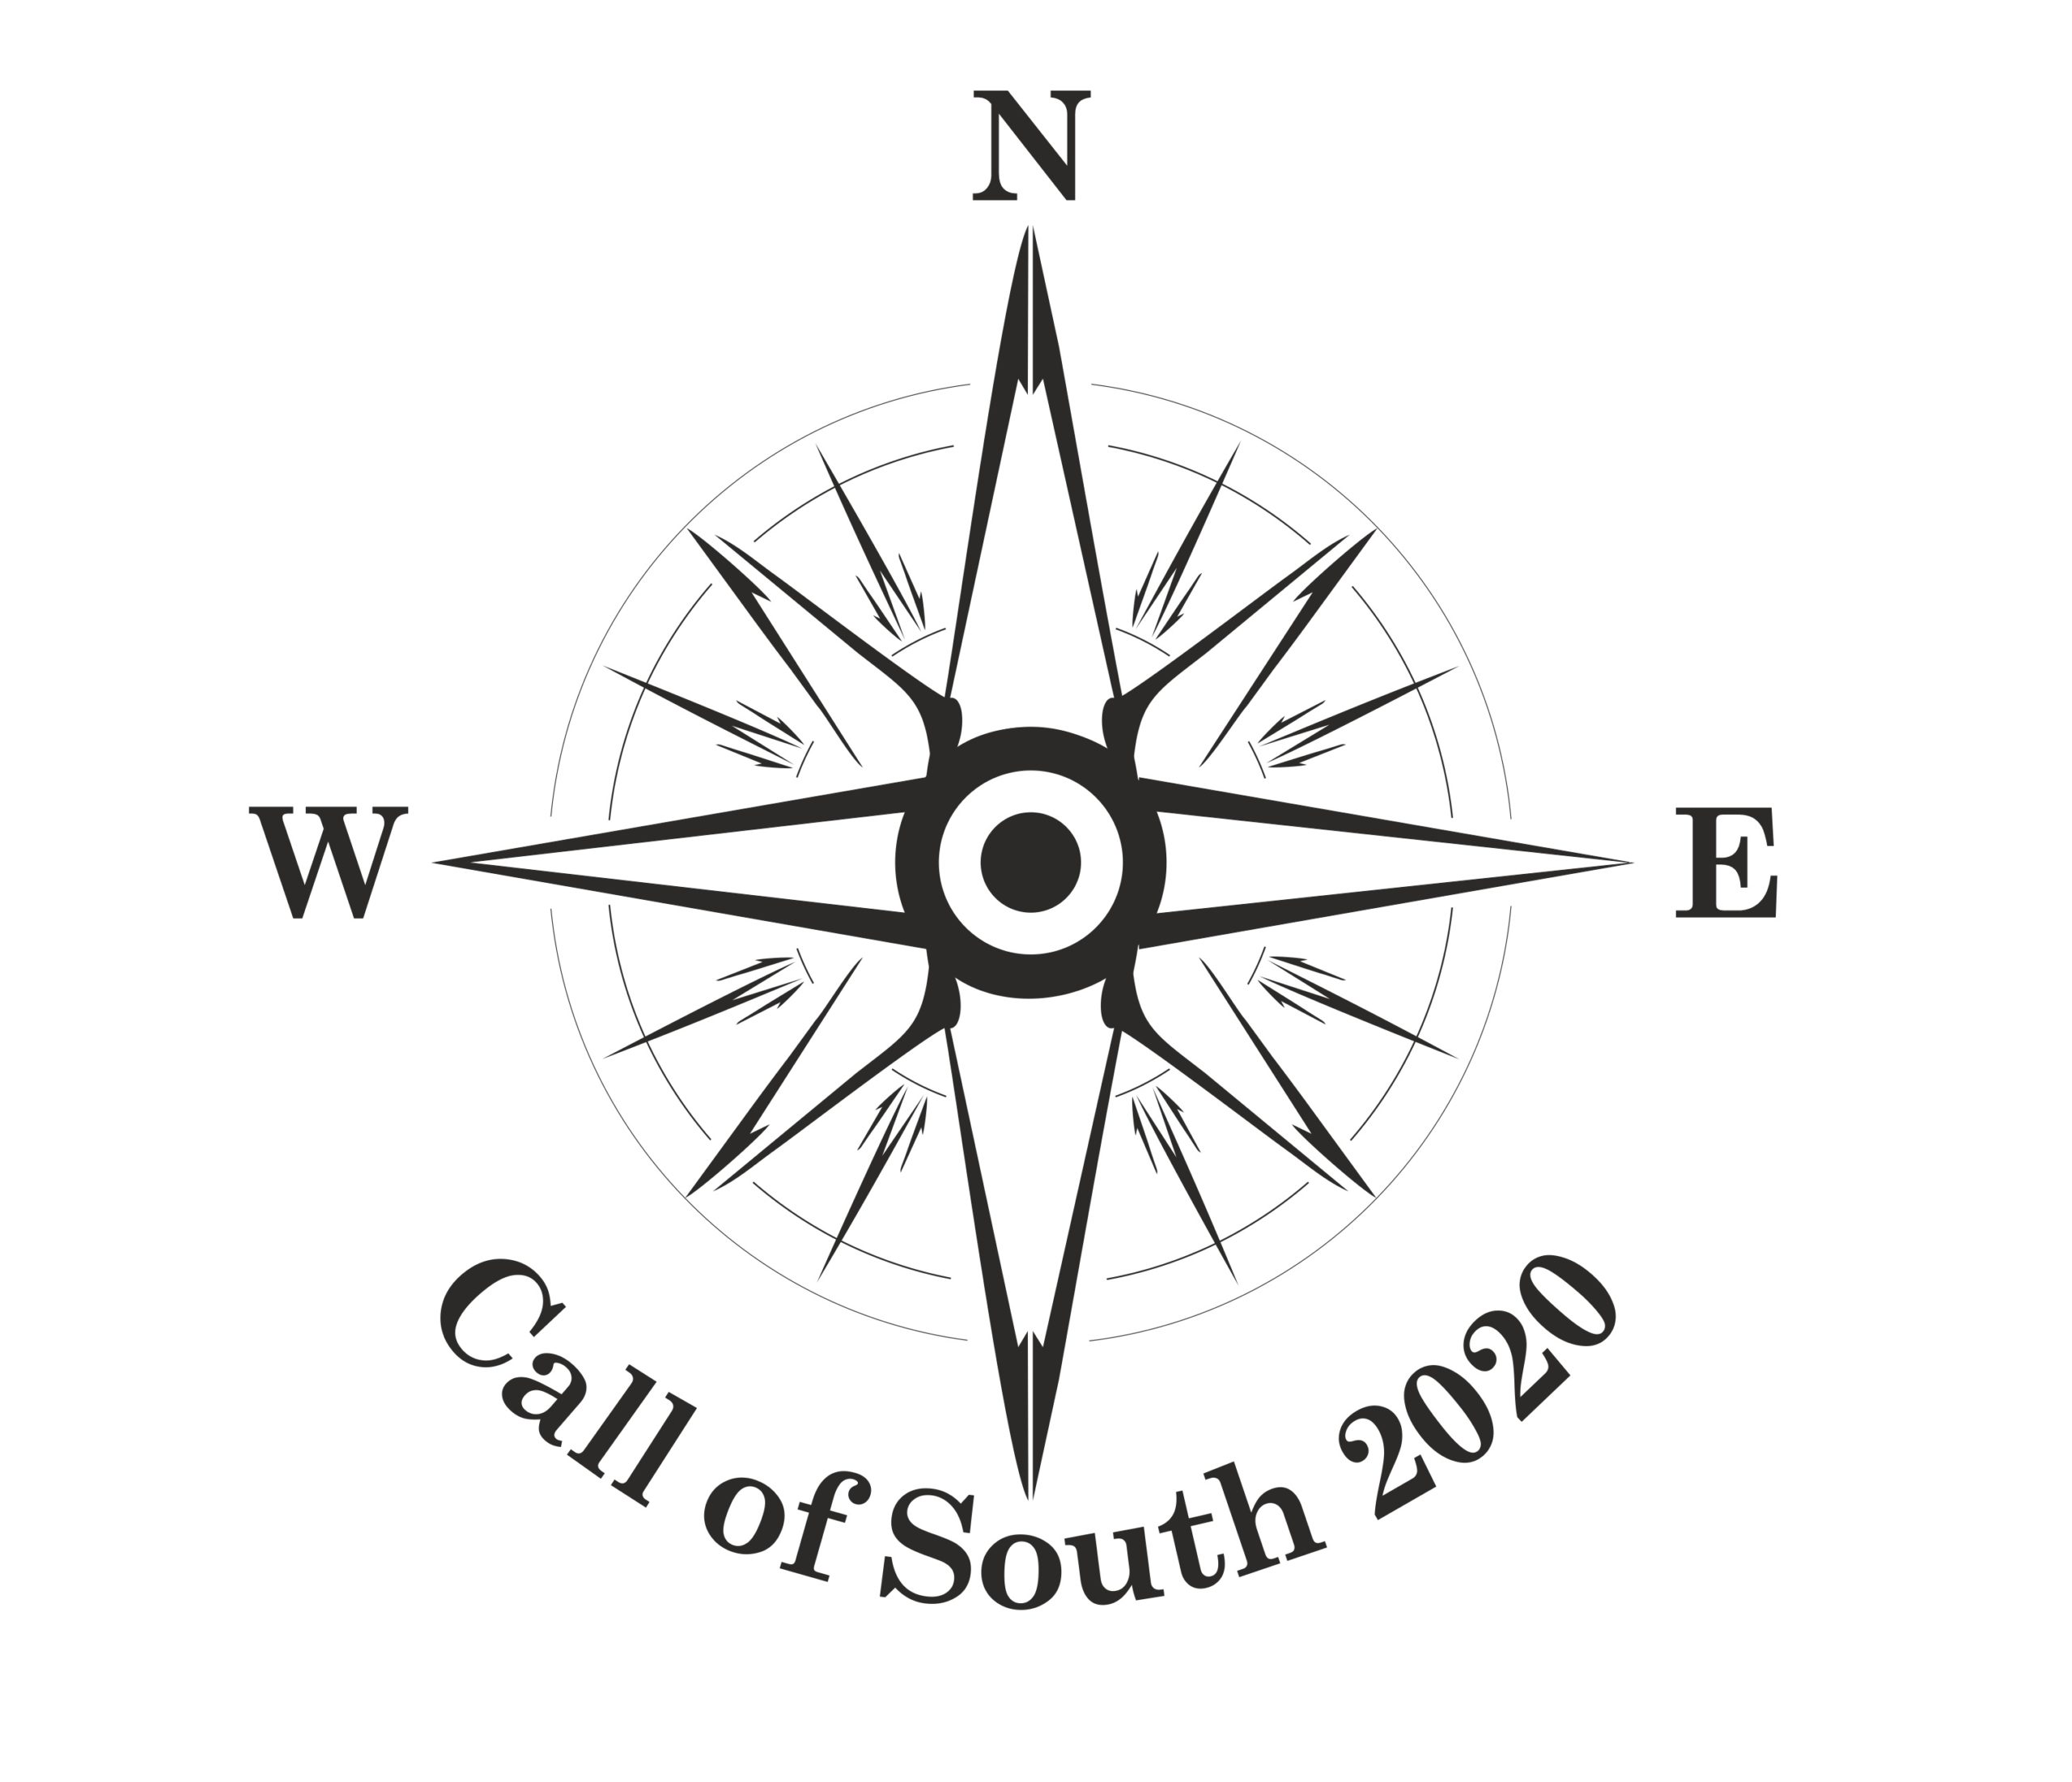 call-of-south-logo